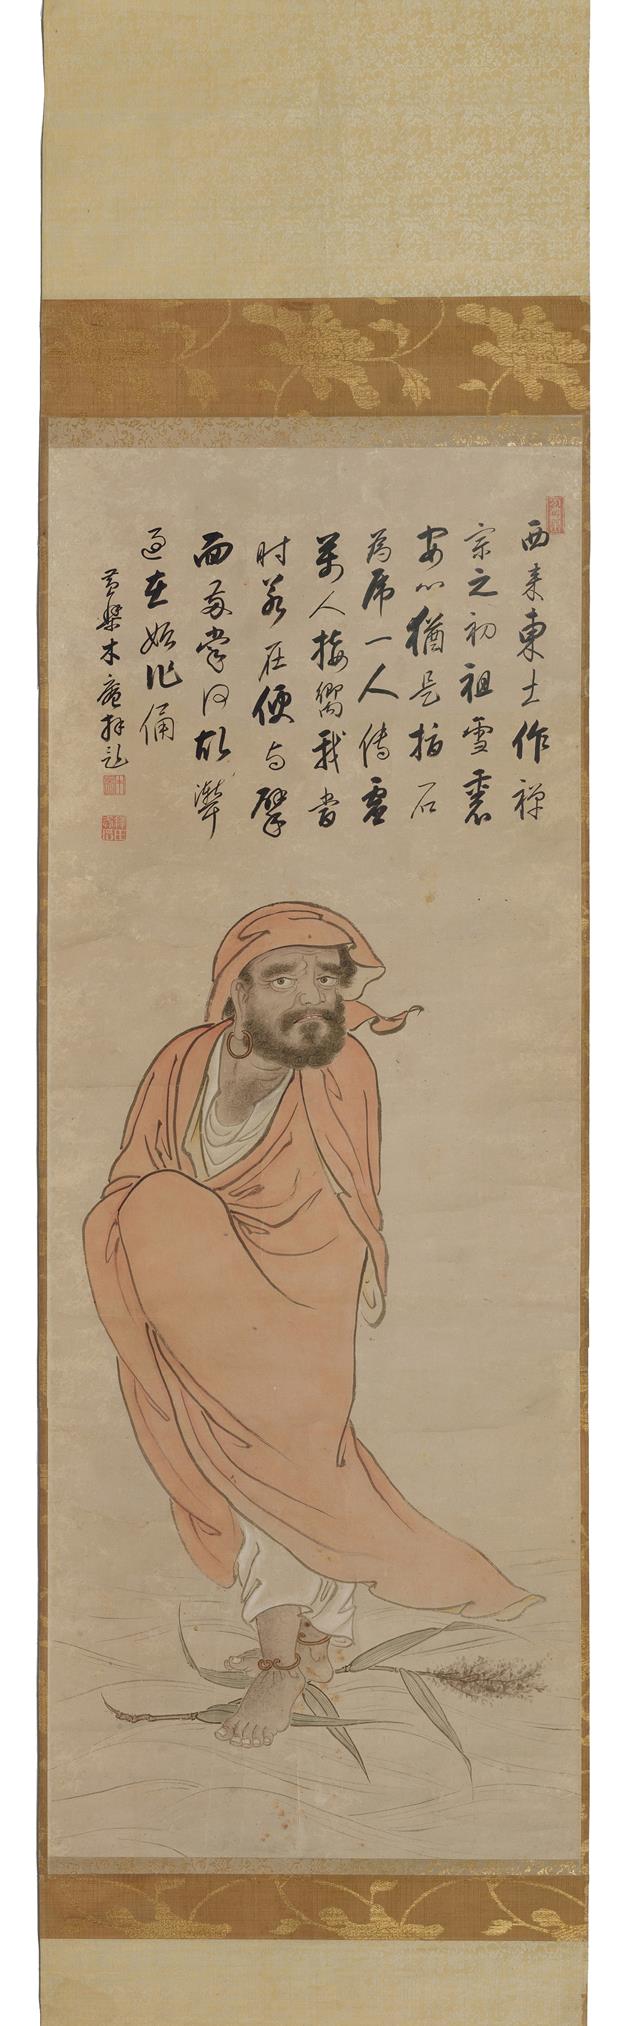 《木庵性瑫达摩渡江图》作者：木庵性瑫(1611-1684)创作年代：1661年规格：137×51.5cm品类：中国画